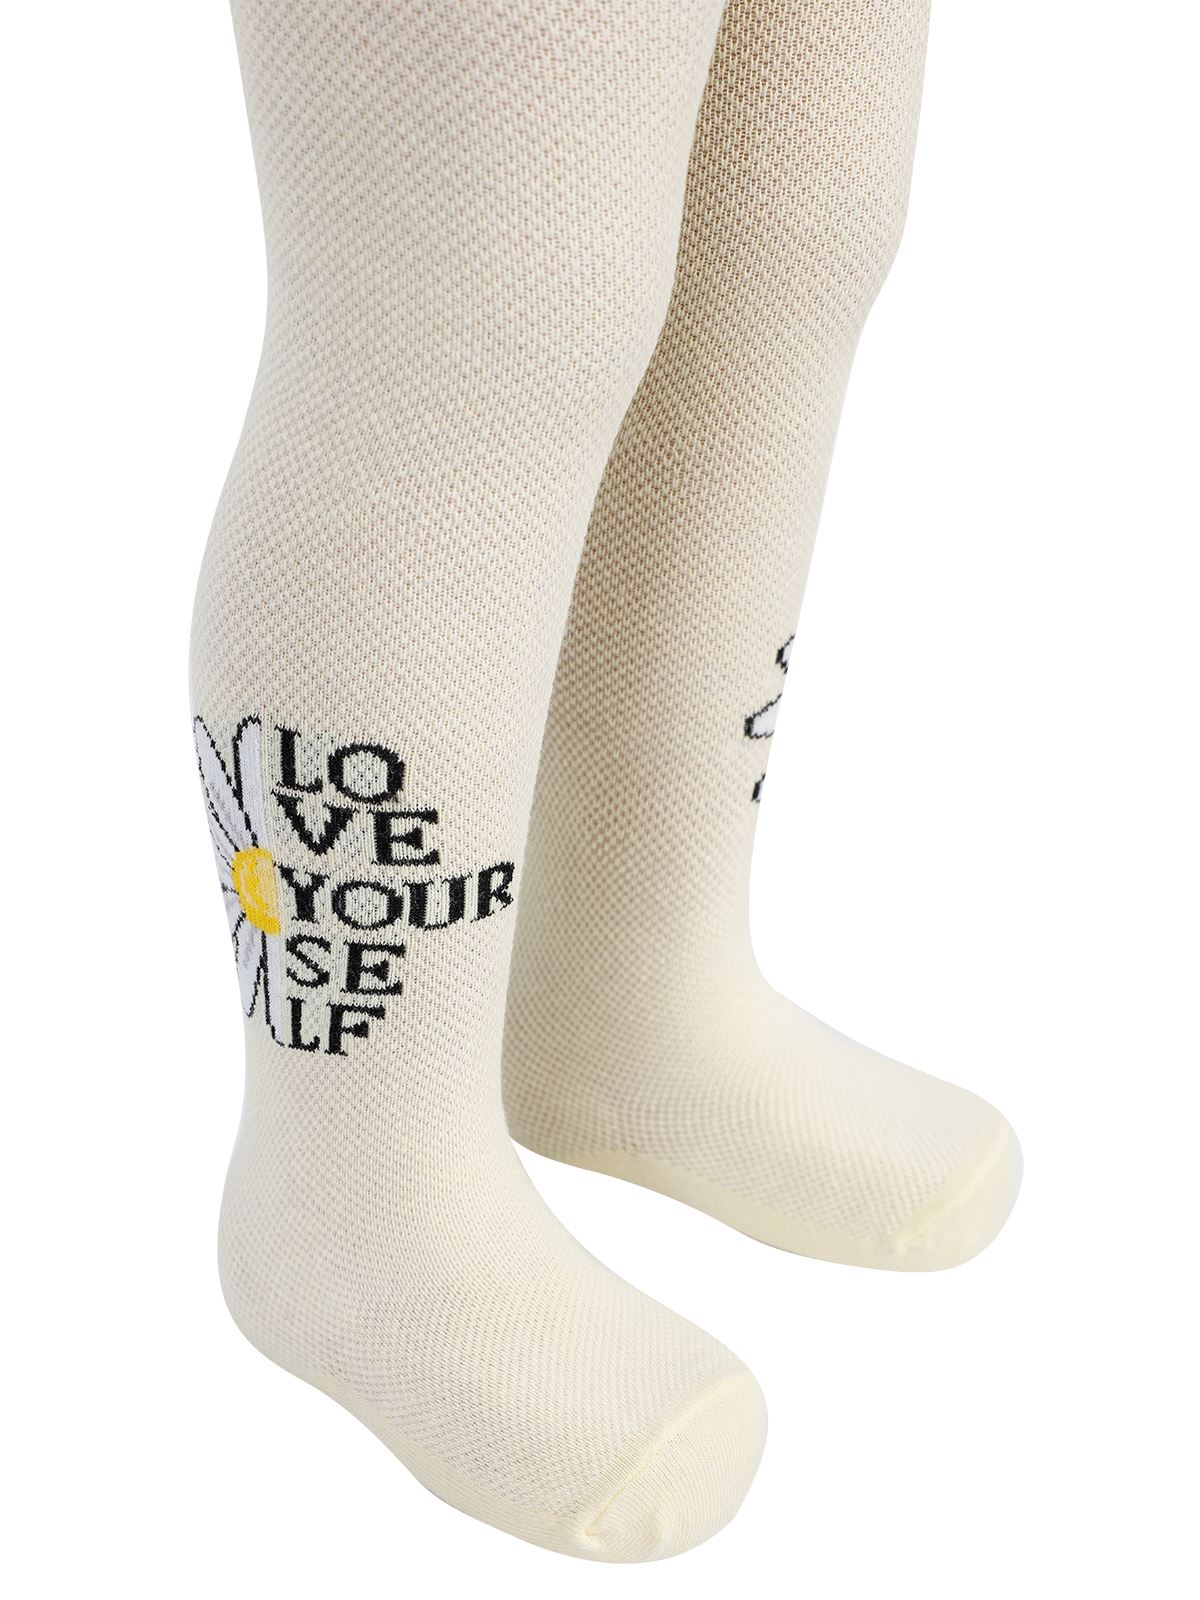 Artı Kız Çocuk Külotlu Çorap 1-7 Yaş Sarı